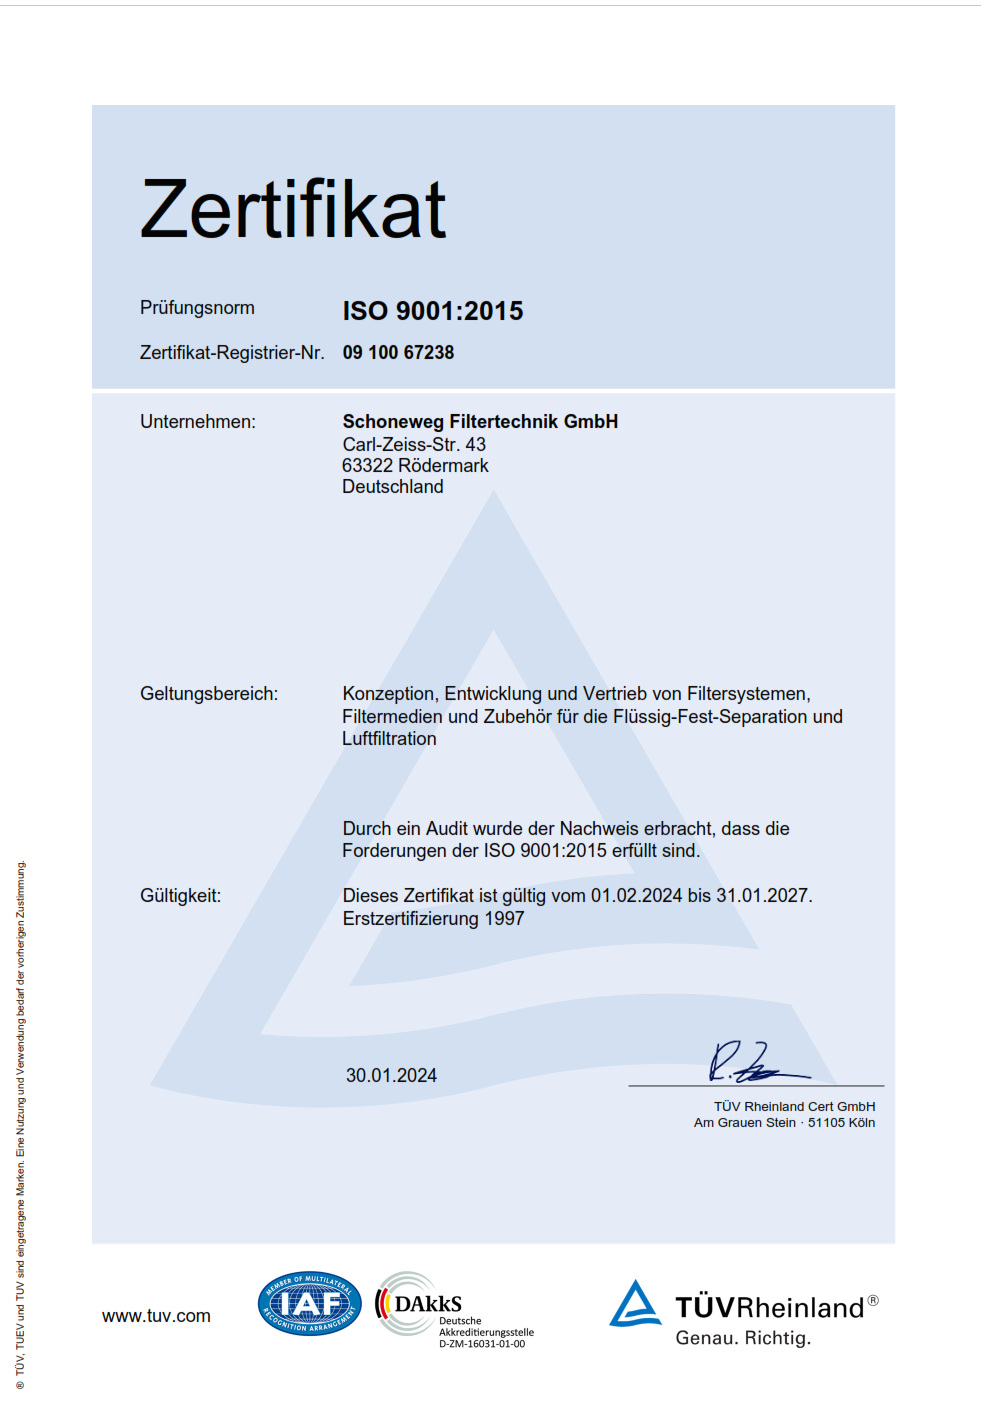 Schoneweg Filtertechnik Zertifikat ISO 9001:2015 deutsch